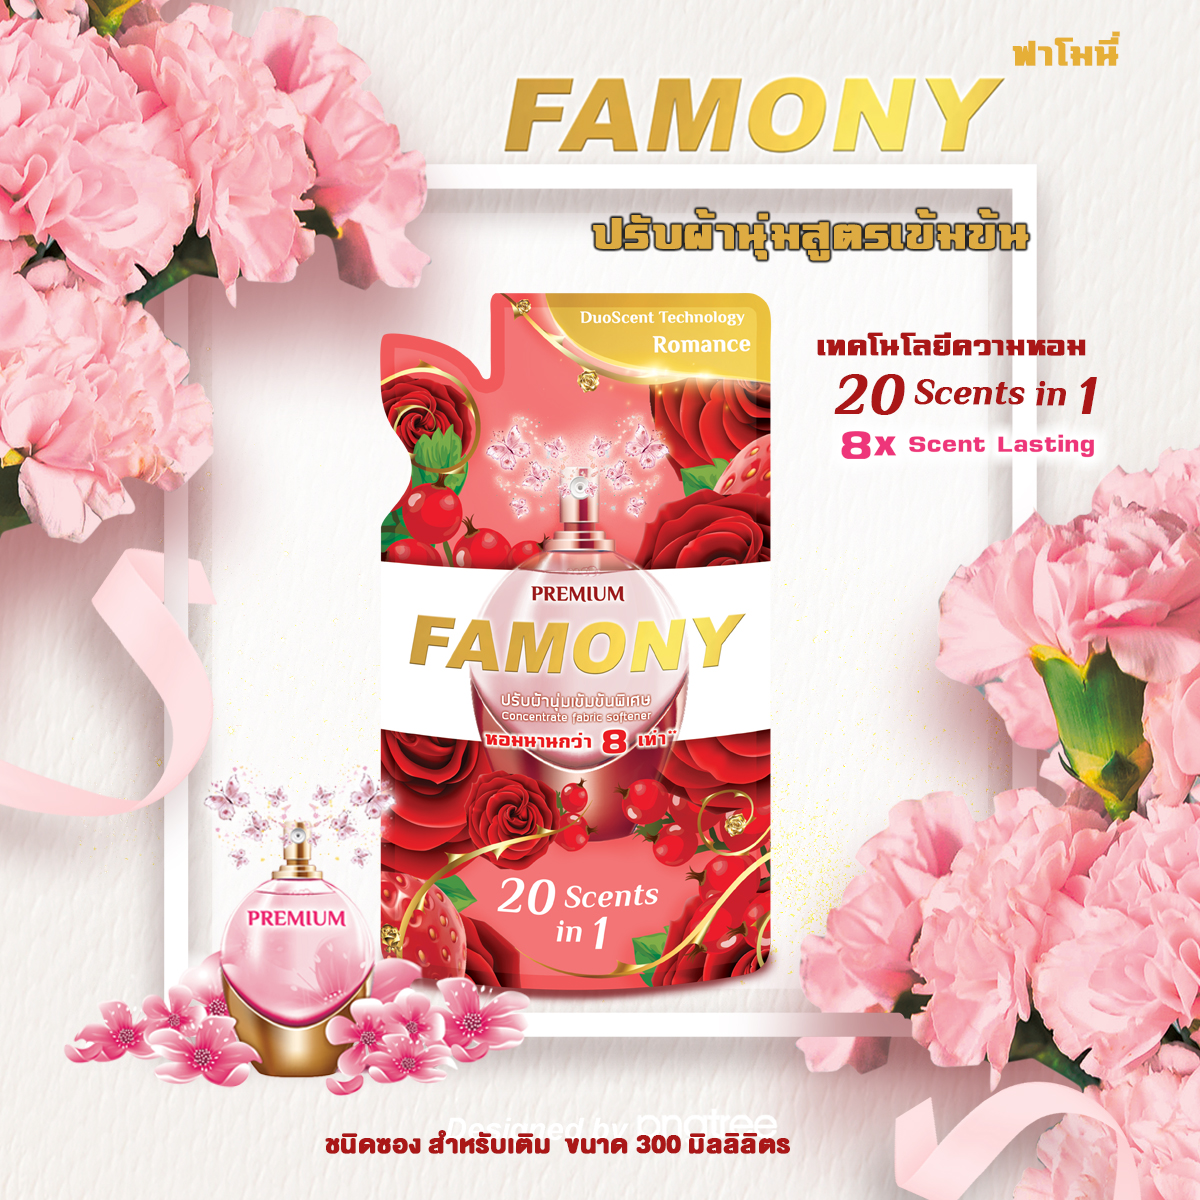 Famony ผลิตภัณฑ์ปรับผ้านุ่ม ขนาด 300 มล. กลิ่น Romance